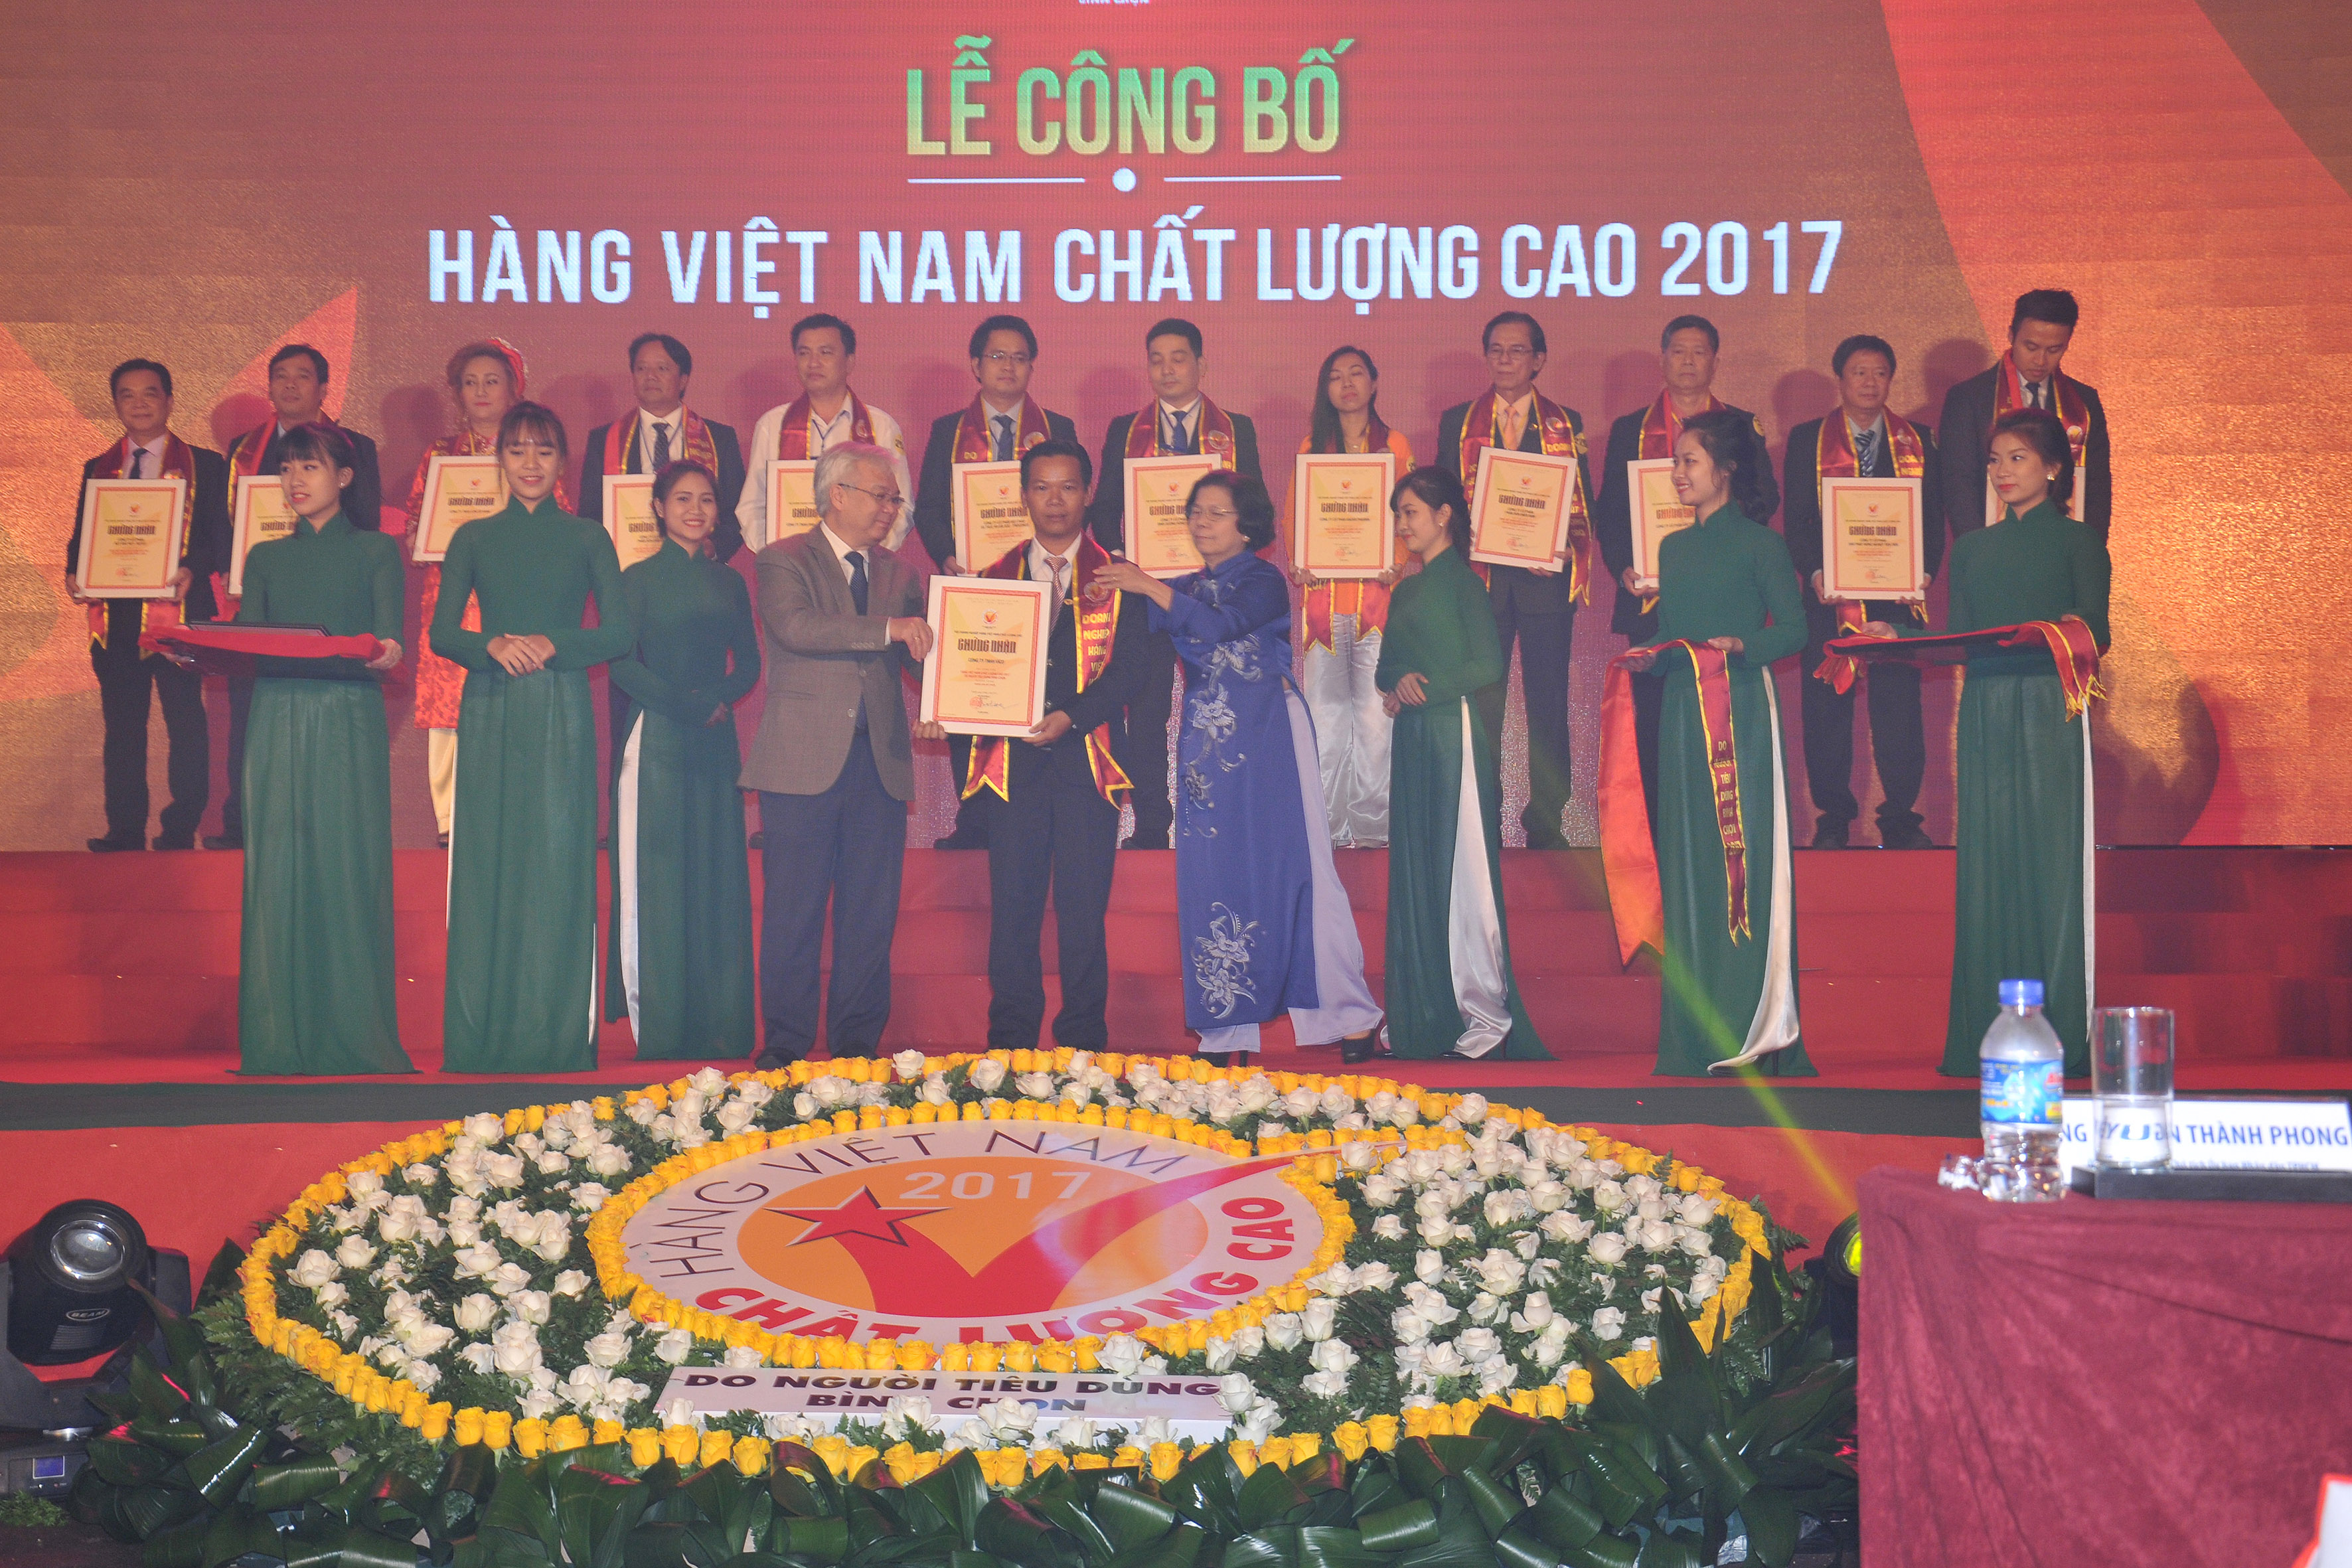 Công ty VICO vinh dự được nhận danh hiệu Hàng Việt Nam Chất lượng cao 2017